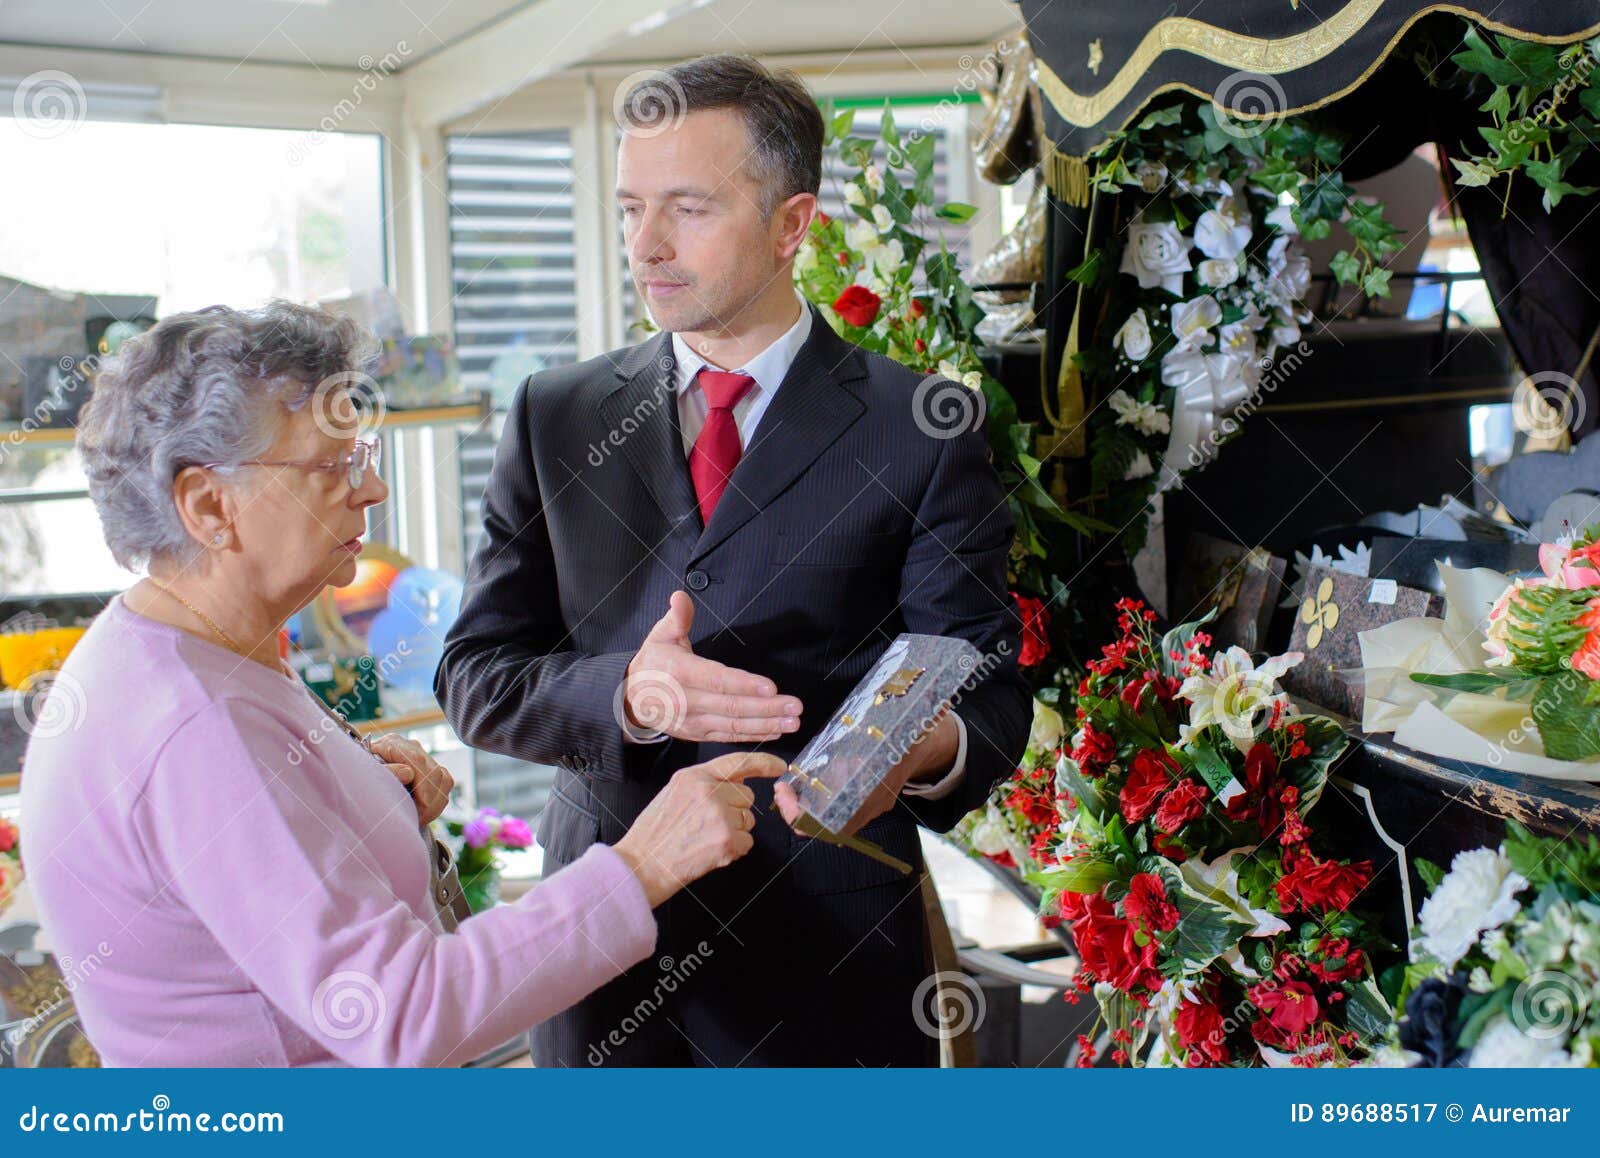 funeral director showing woman memorial plaque